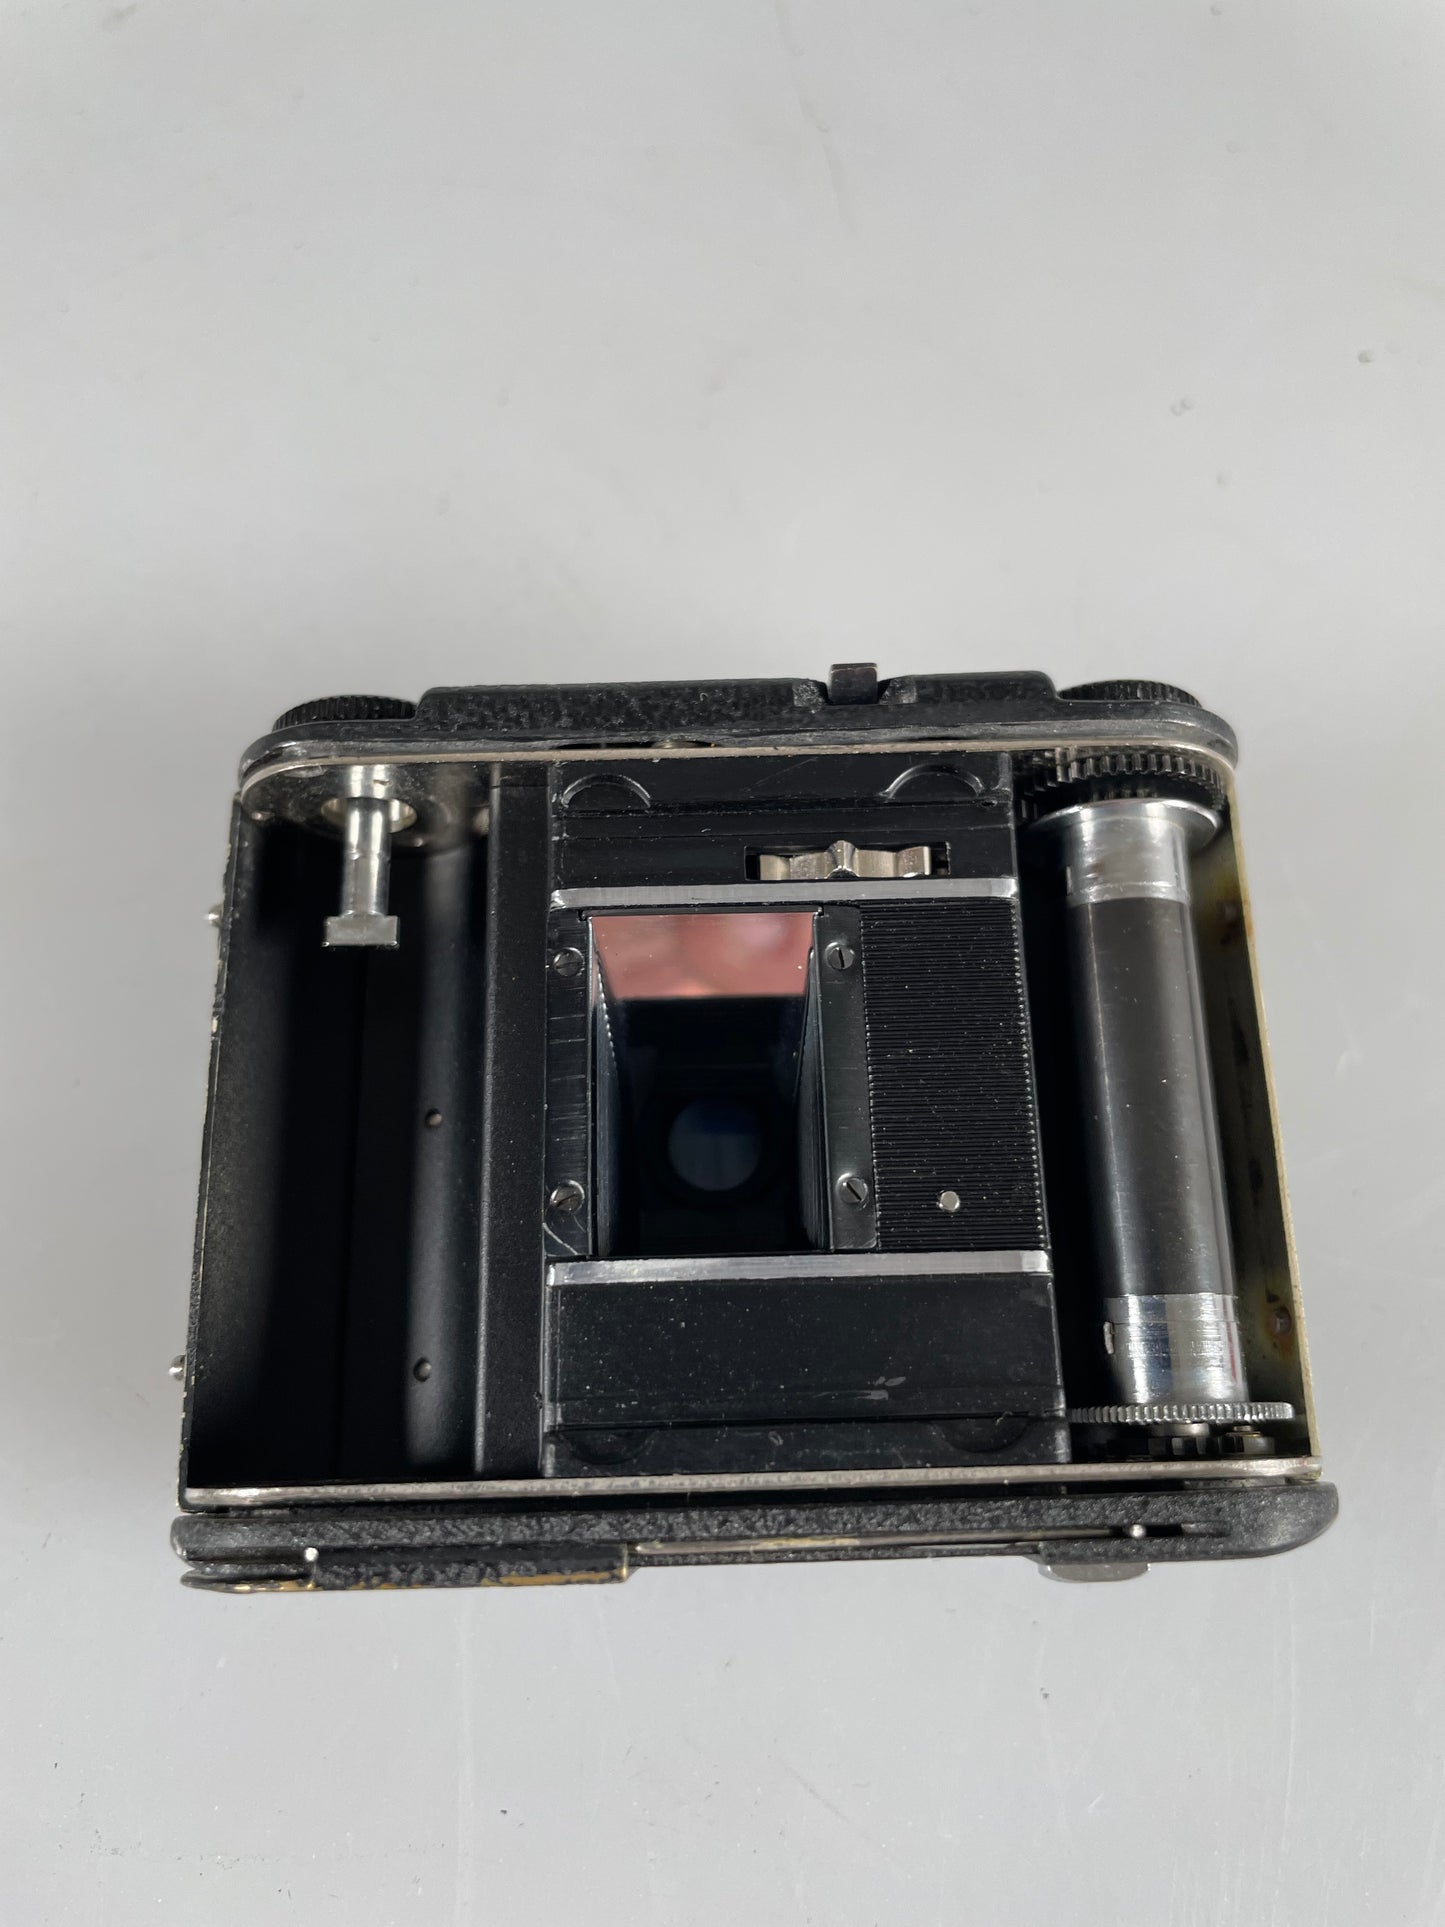 Tessina 35 L with 25mm F2.8 lens RARE Black w/ case, meter, prism, finder